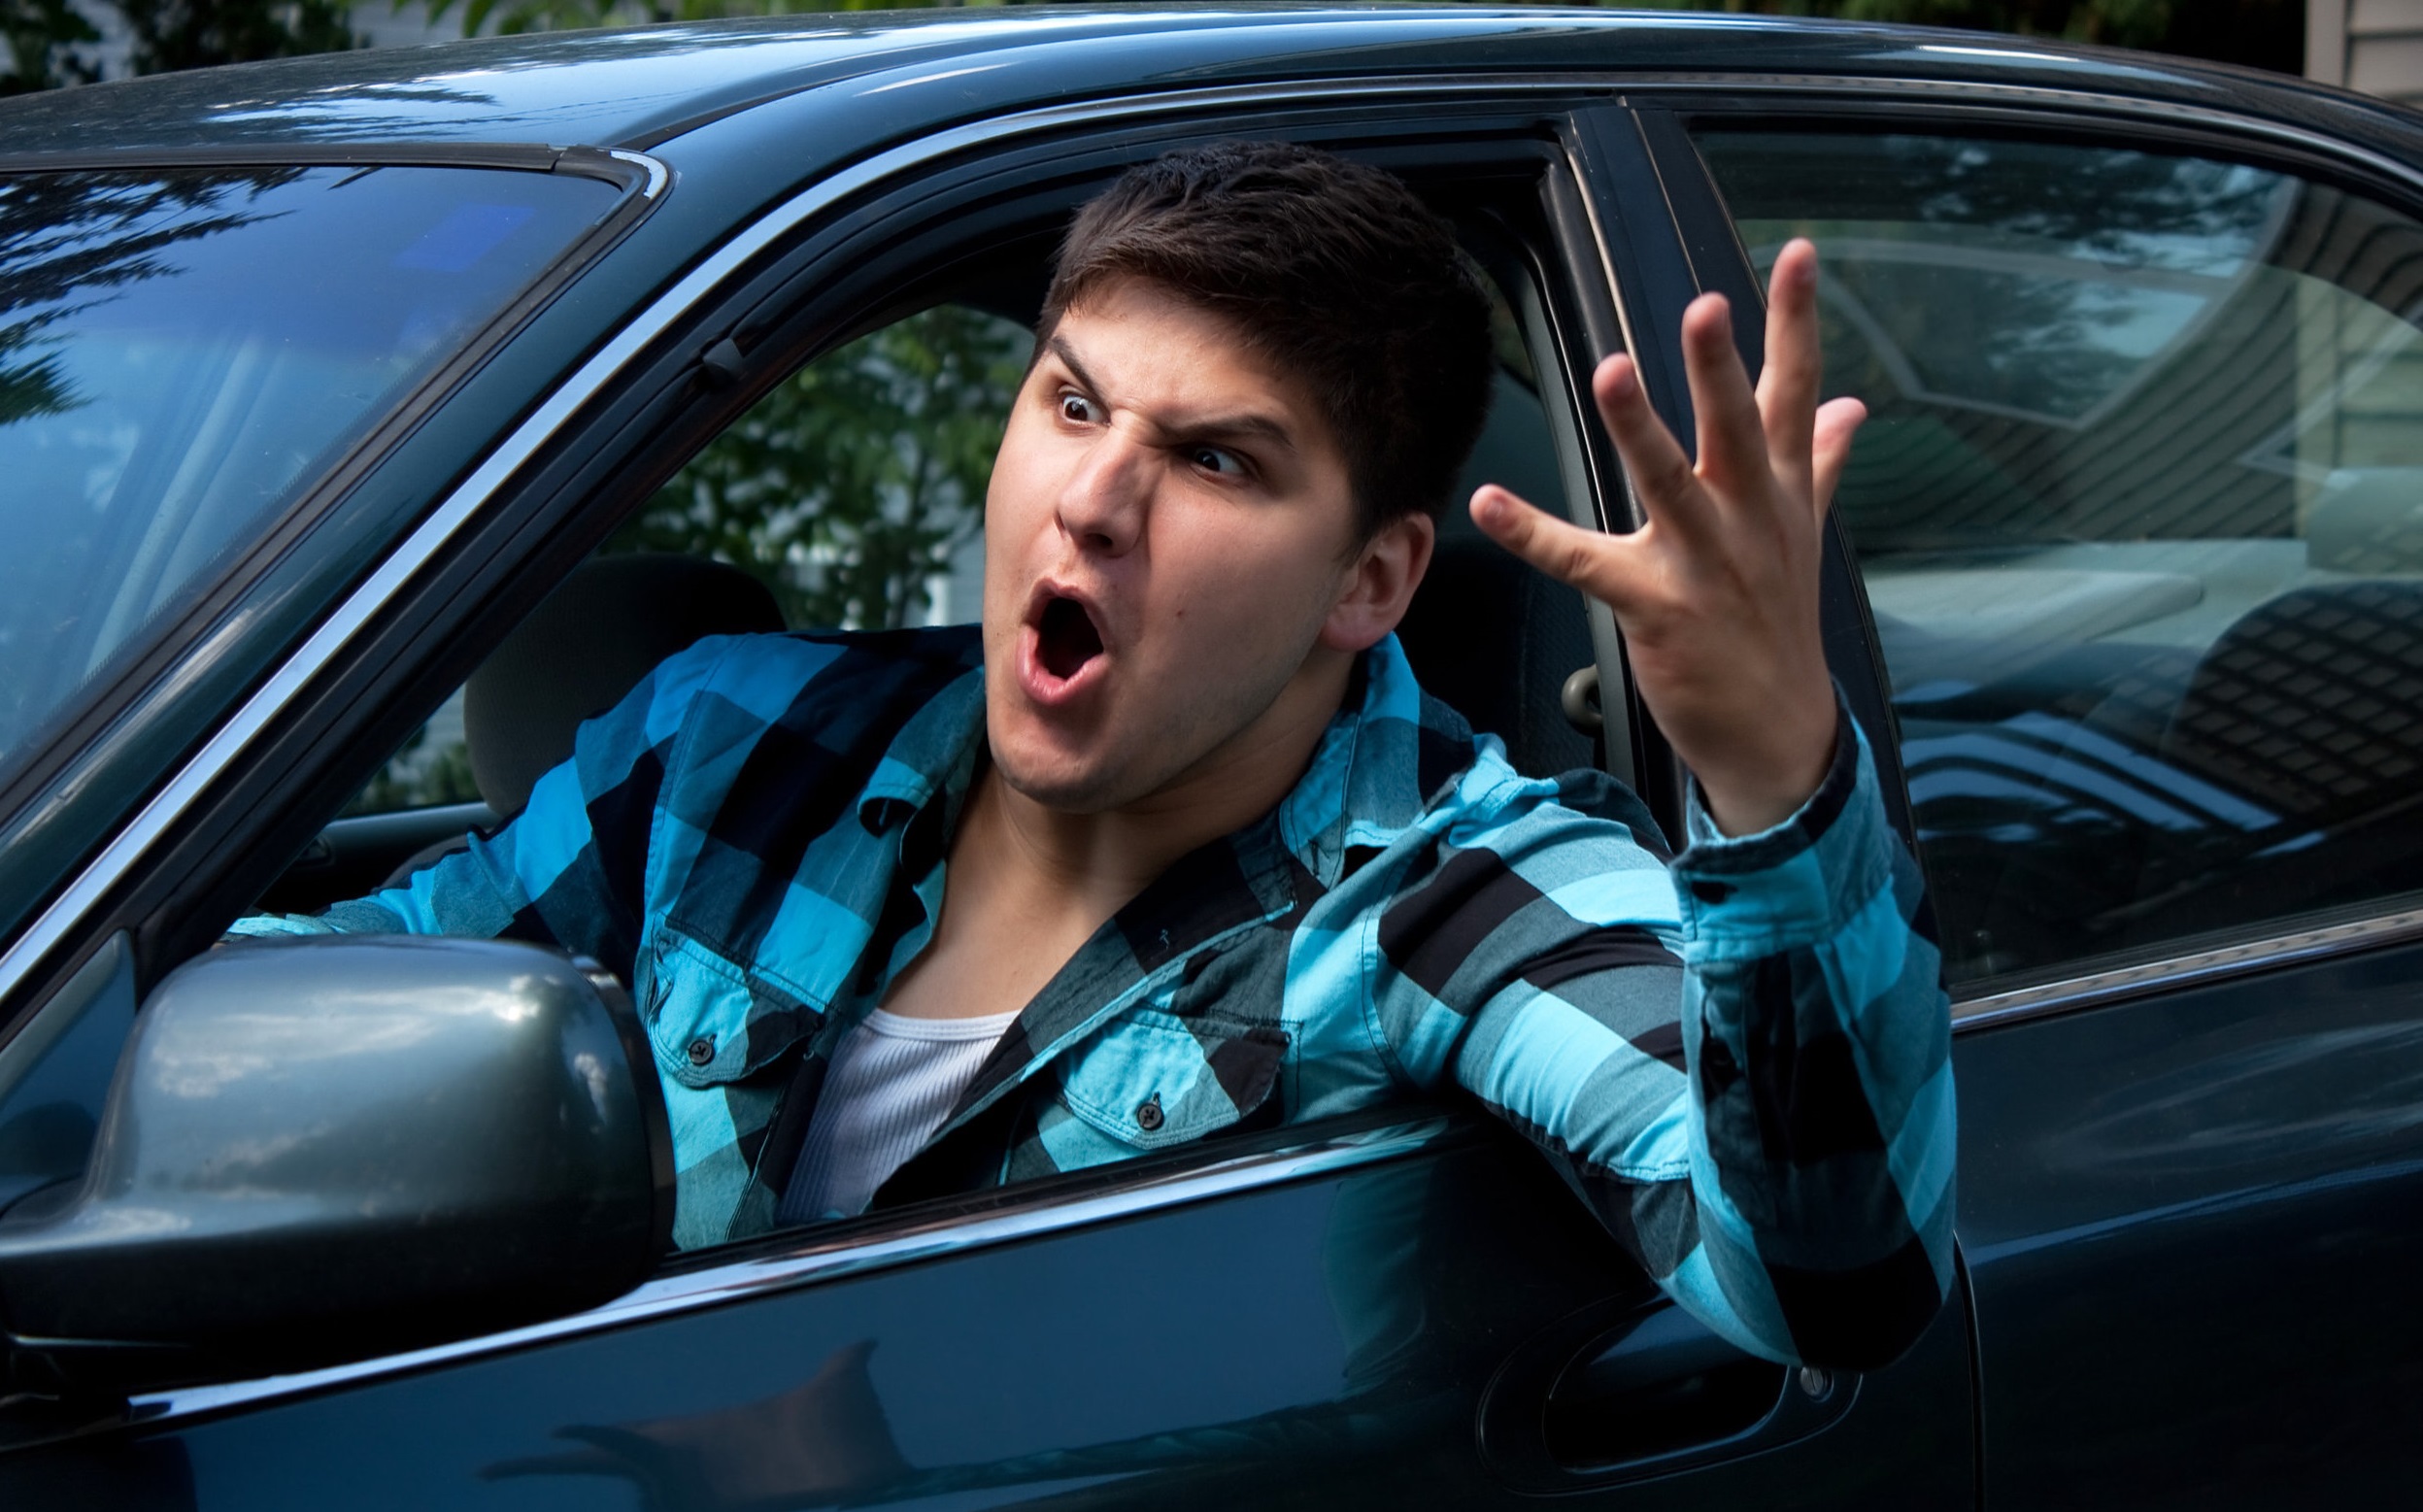 عصبانیت حین رانندگی - روش های کنترل خشم